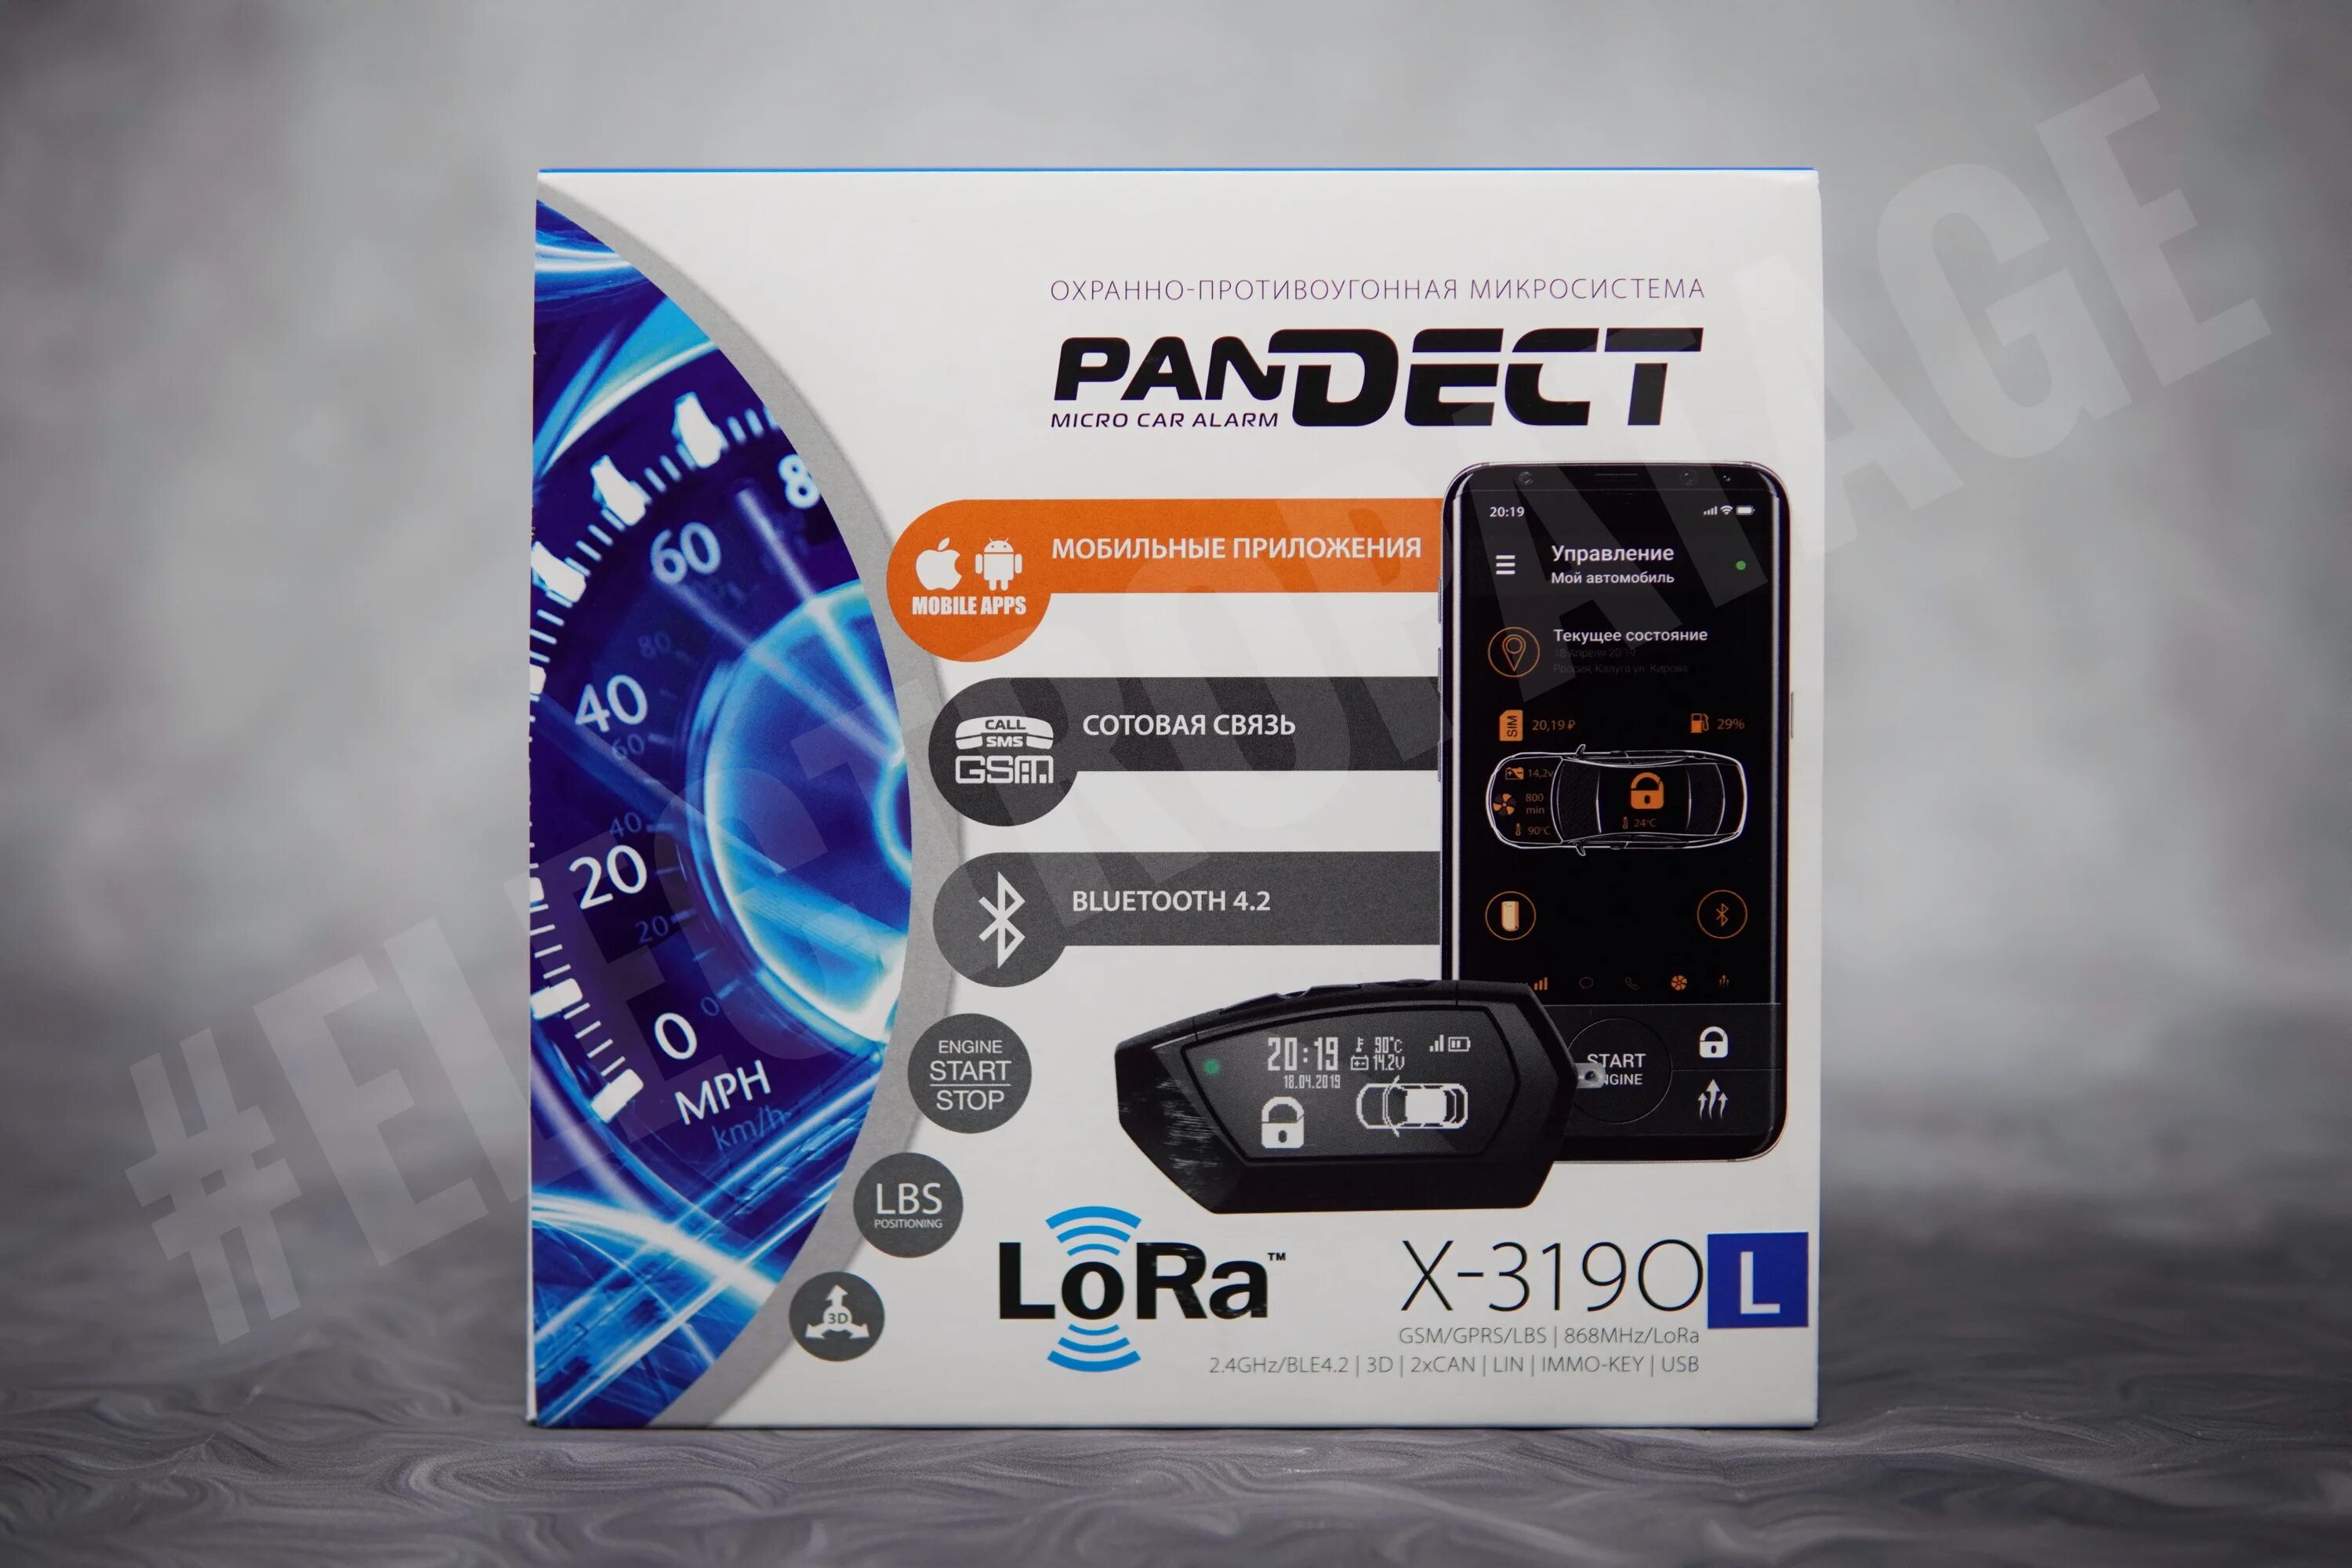 Pandect x-3190. Pandect x-3150. Pandora Pandect x-3190. Pandect 100dt.